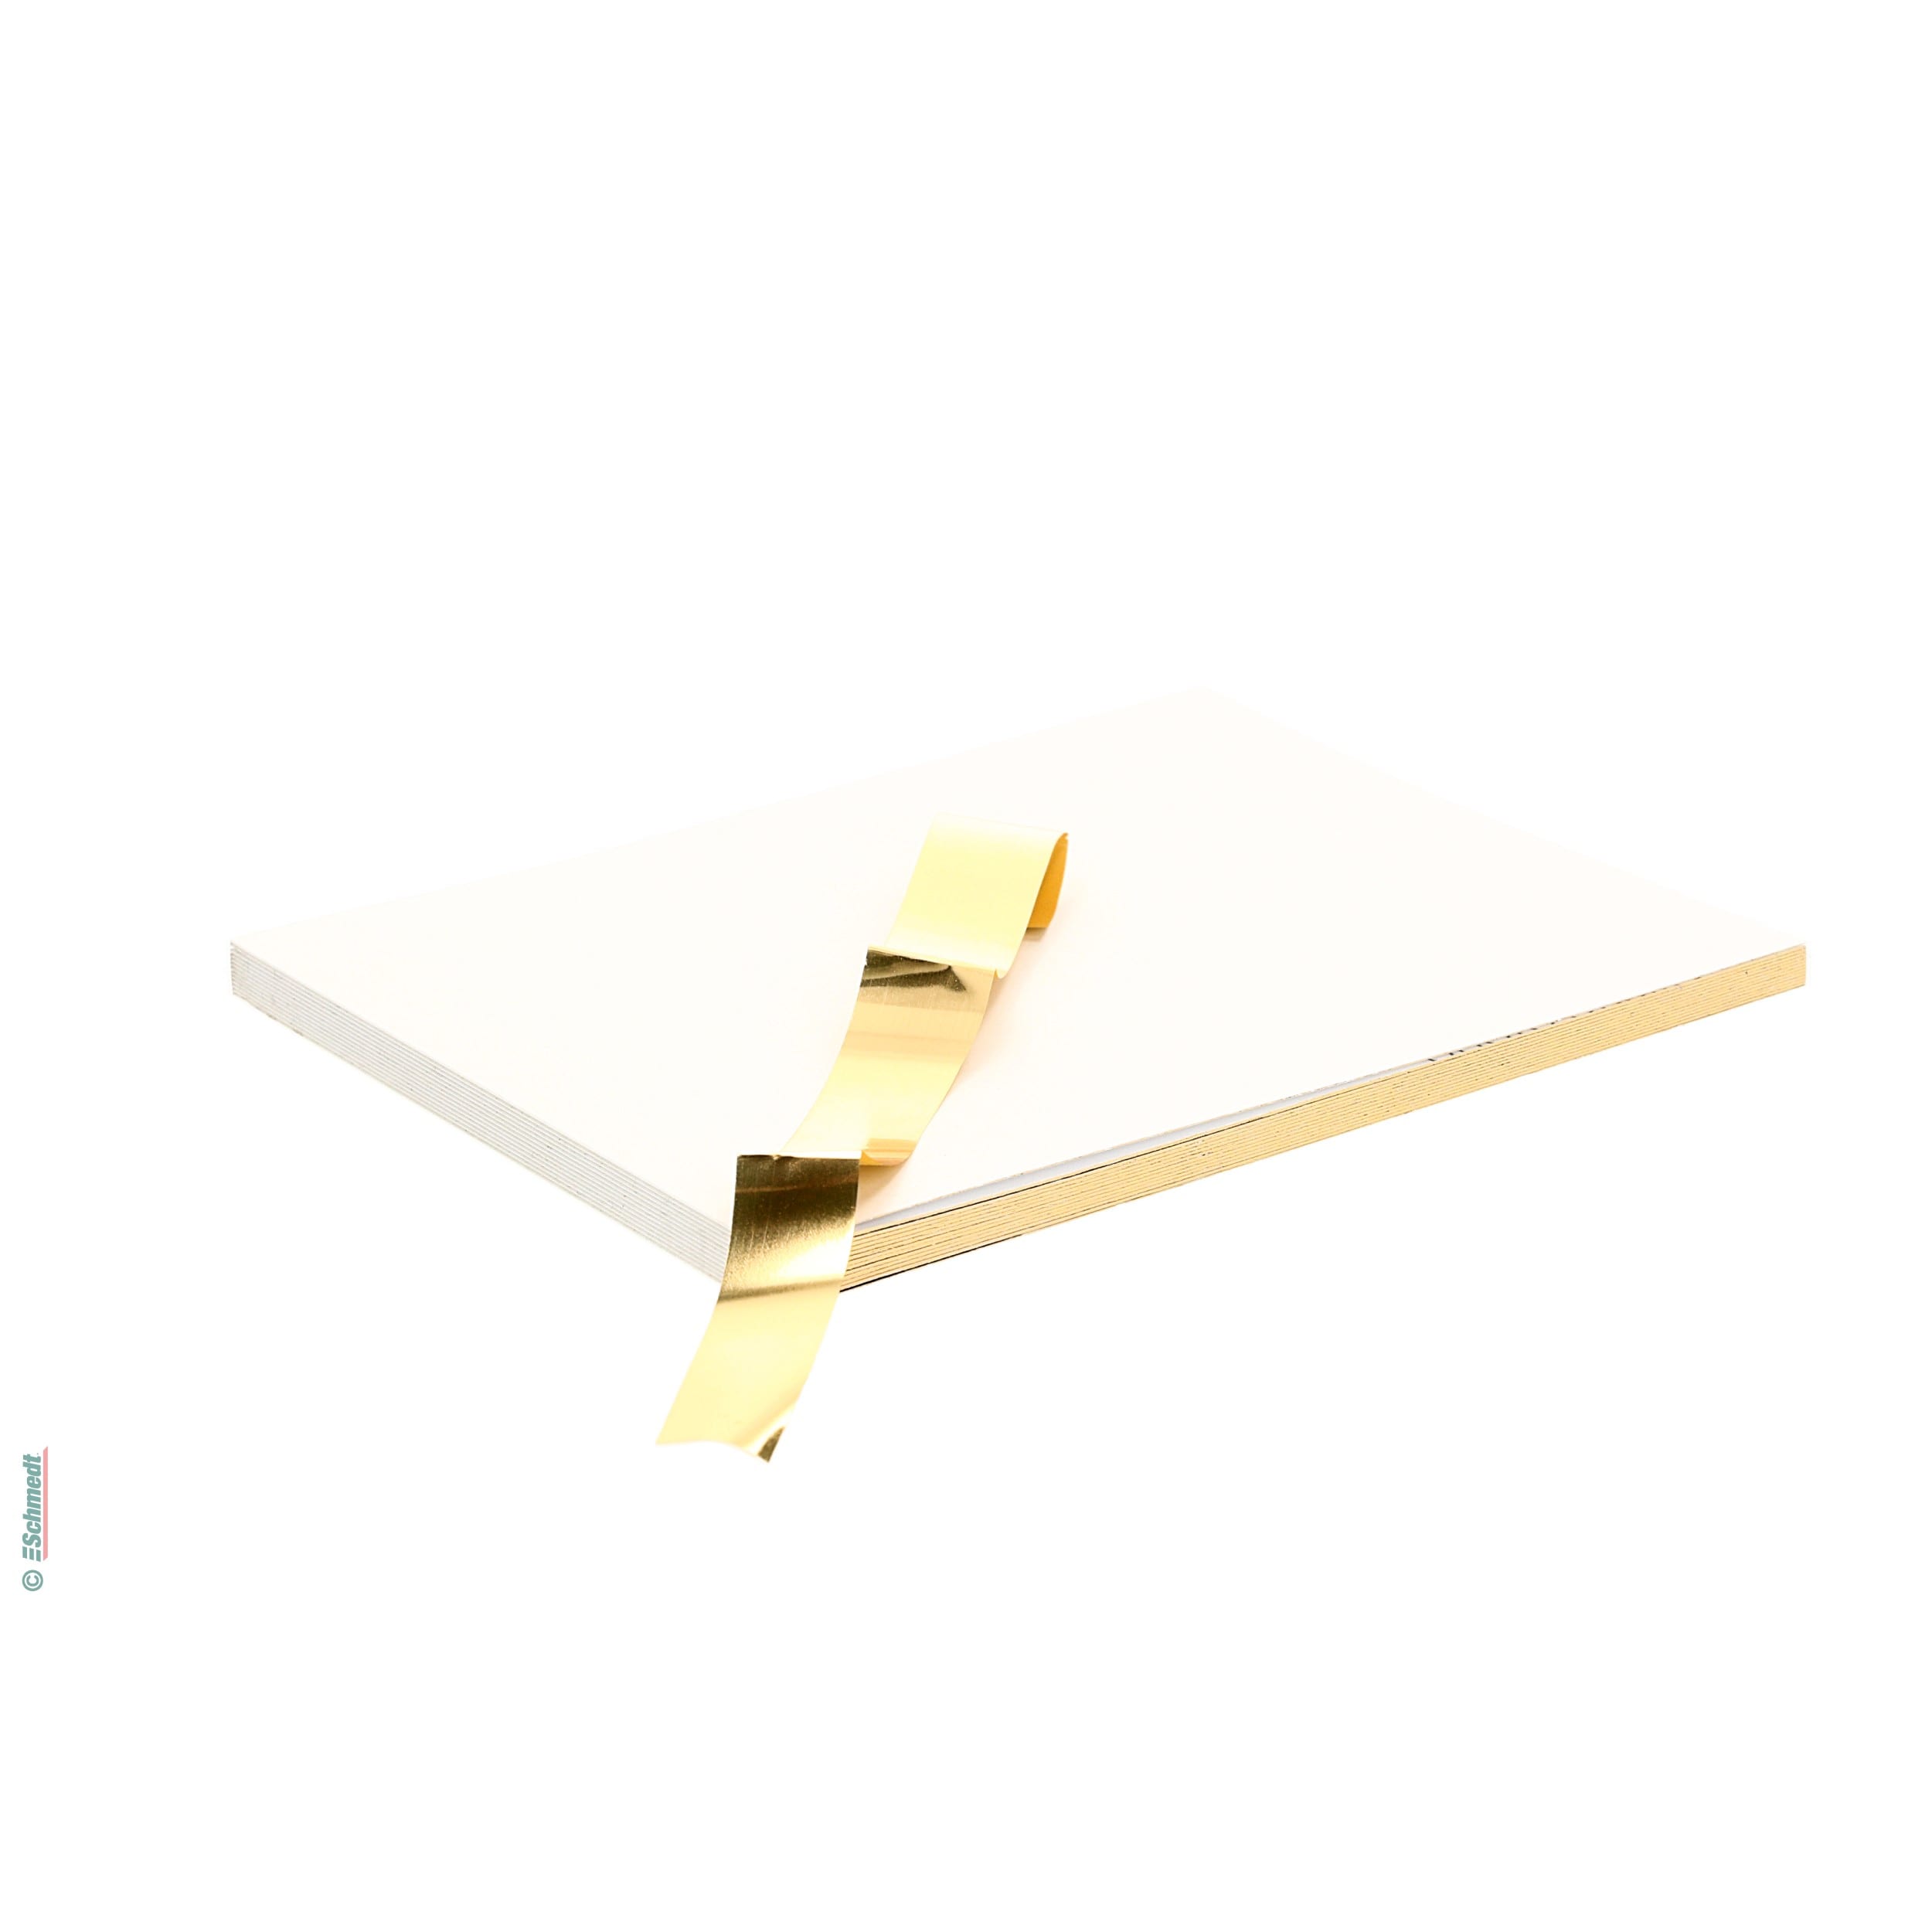 Echtgold-Buchschnittfolie - zur Schnittveredelung mit der Goldschnittrolle - für normale und Digitaldruckpapiere geeignet...